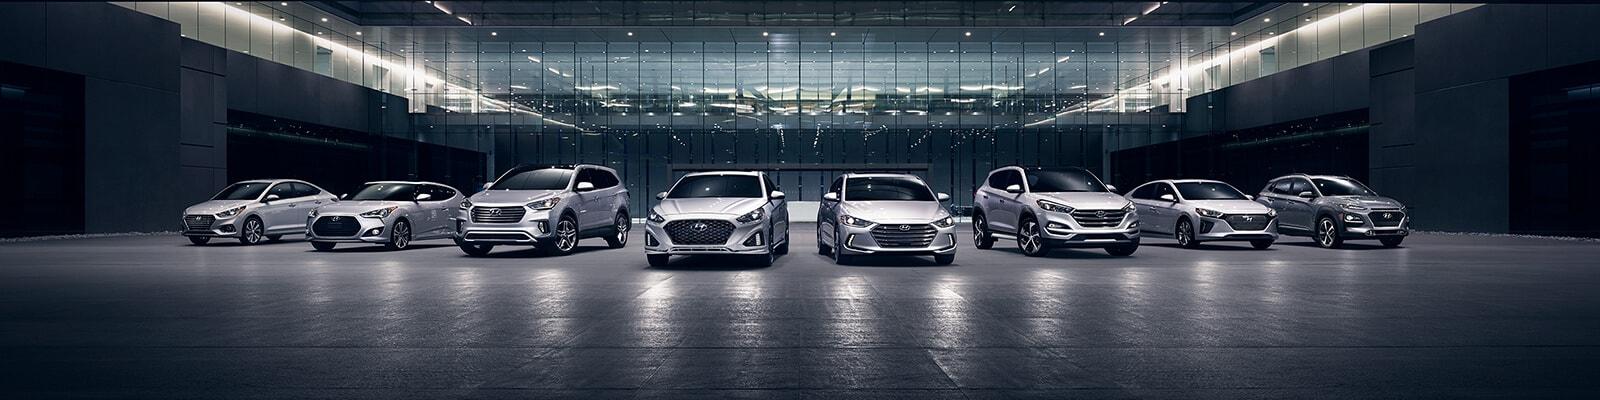 Hyundai model lineup in a showroom